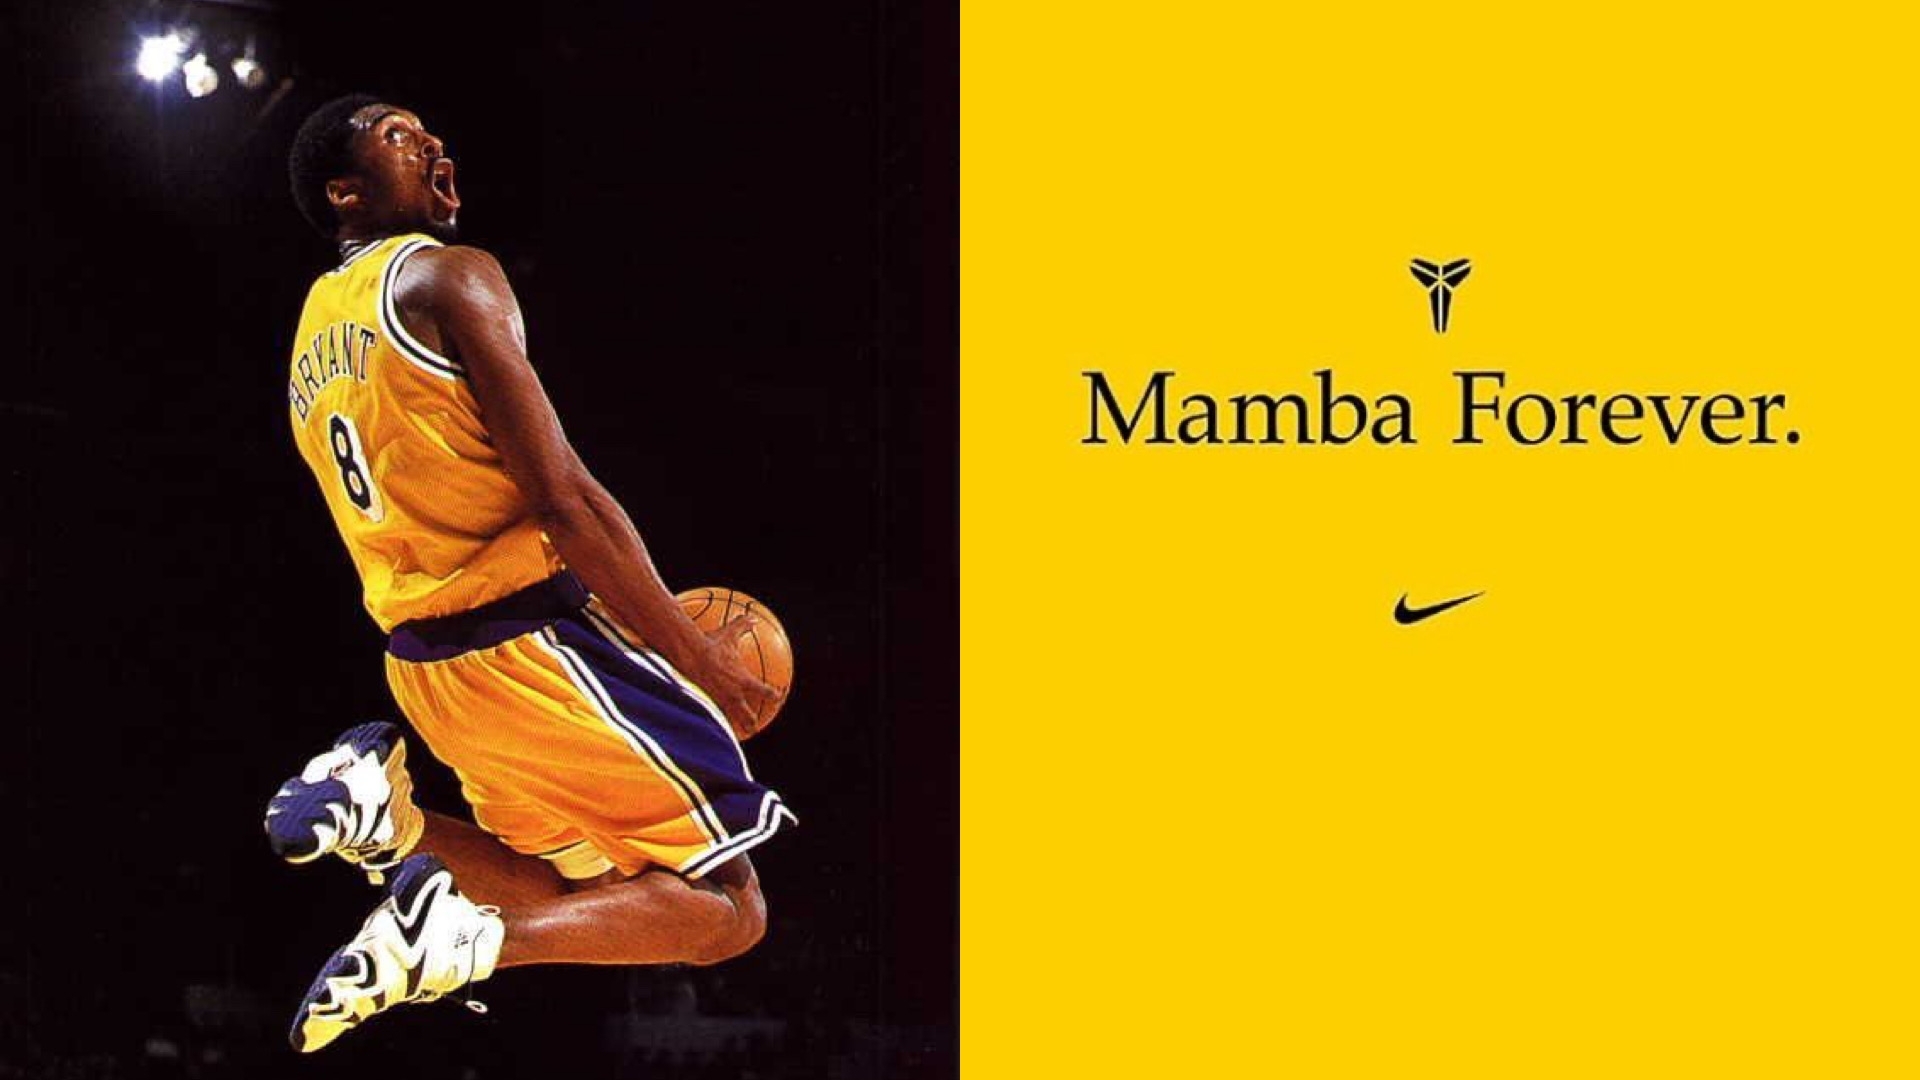 你最愛哪個時期的老大？回顧 Kobe 從 adidas 到 Nike 時期的球鞋，哪雙才是你的最愛？